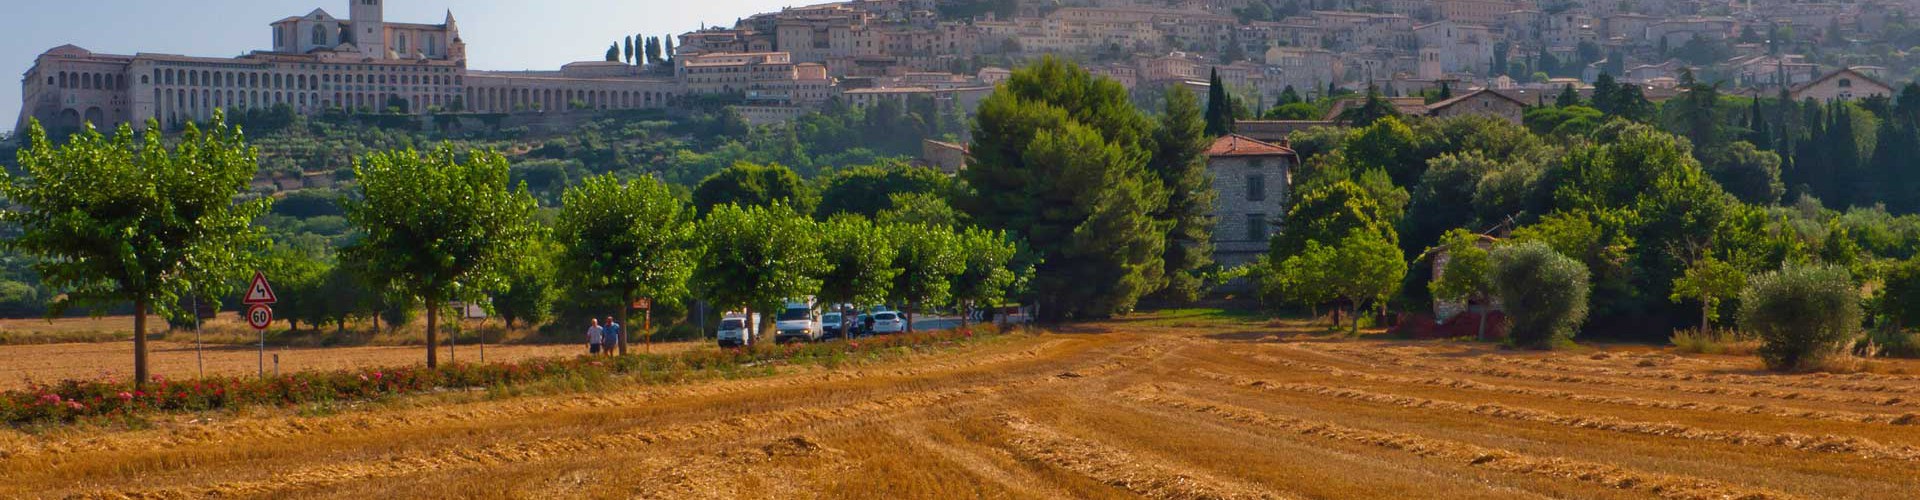 Relais Parco del Subasio | Agriturismo Assisi - Conosci L'Umbria Featured Image